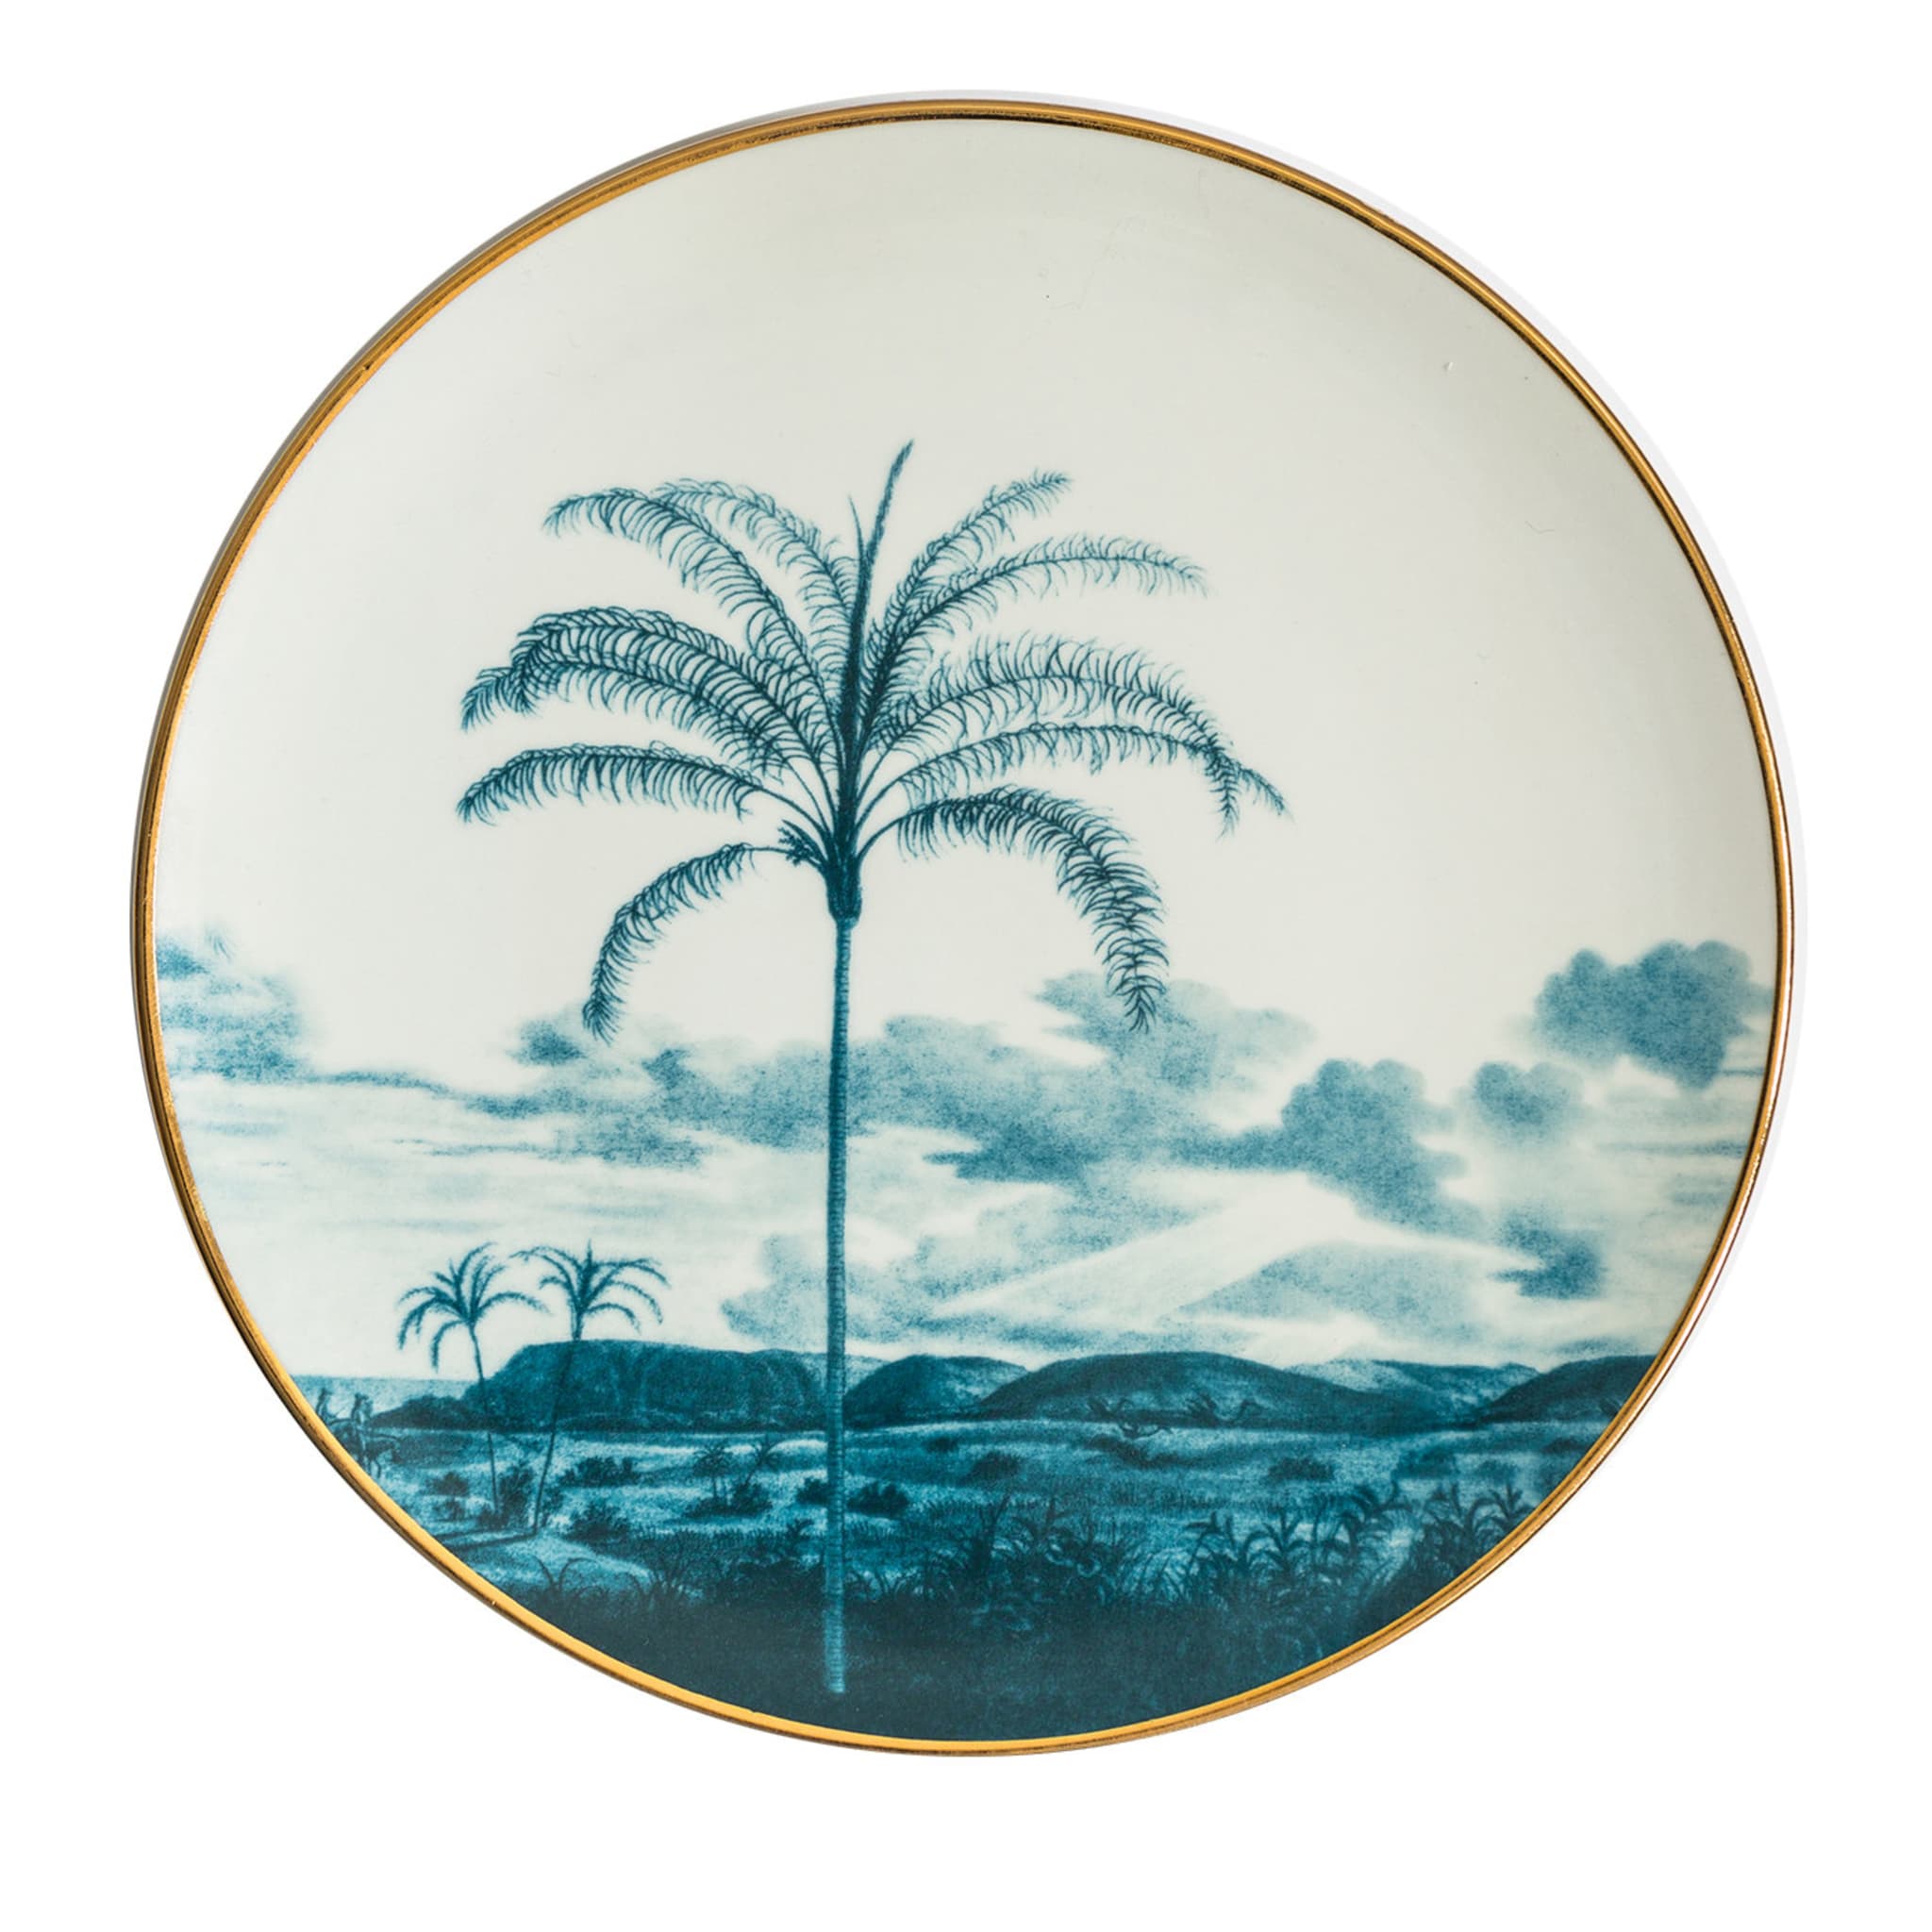 Las Palmas Porcelain Dinner Plate With Blue Tropical Lendscape #3 - Main view